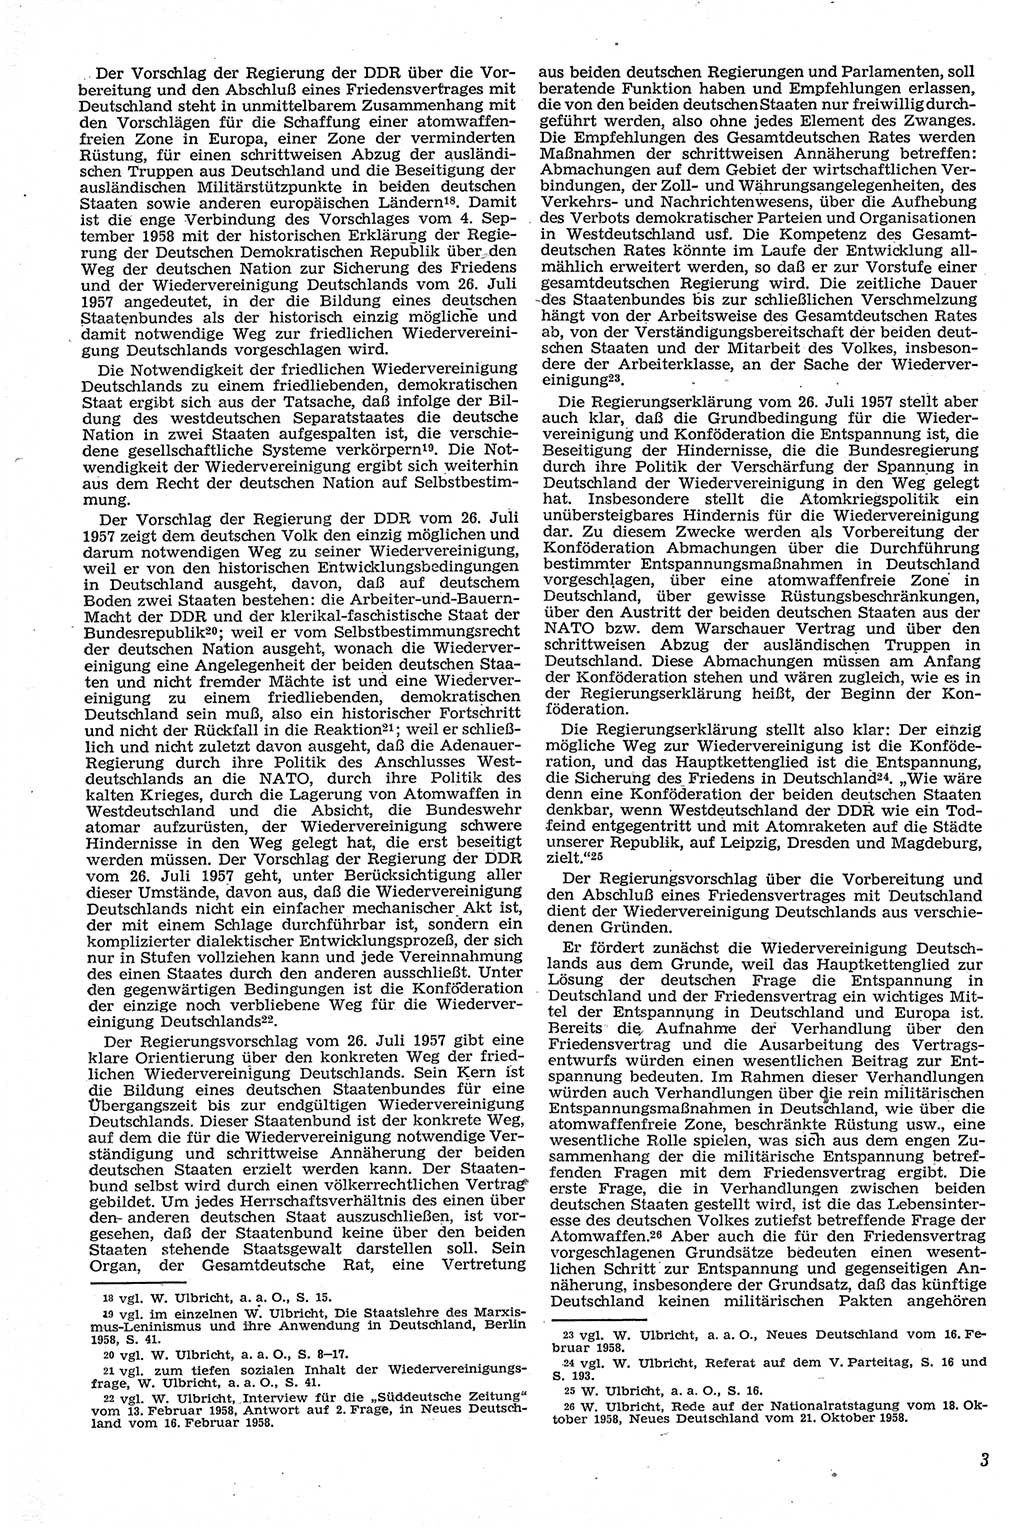 Neue Justiz (NJ), Zeitschrift für Recht und Rechtswissenschaft [Deutsche Demokratische Republik (DDR)], 13. Jahrgang 1959, Seite 4 (NJ DDR 1959, S. 4)